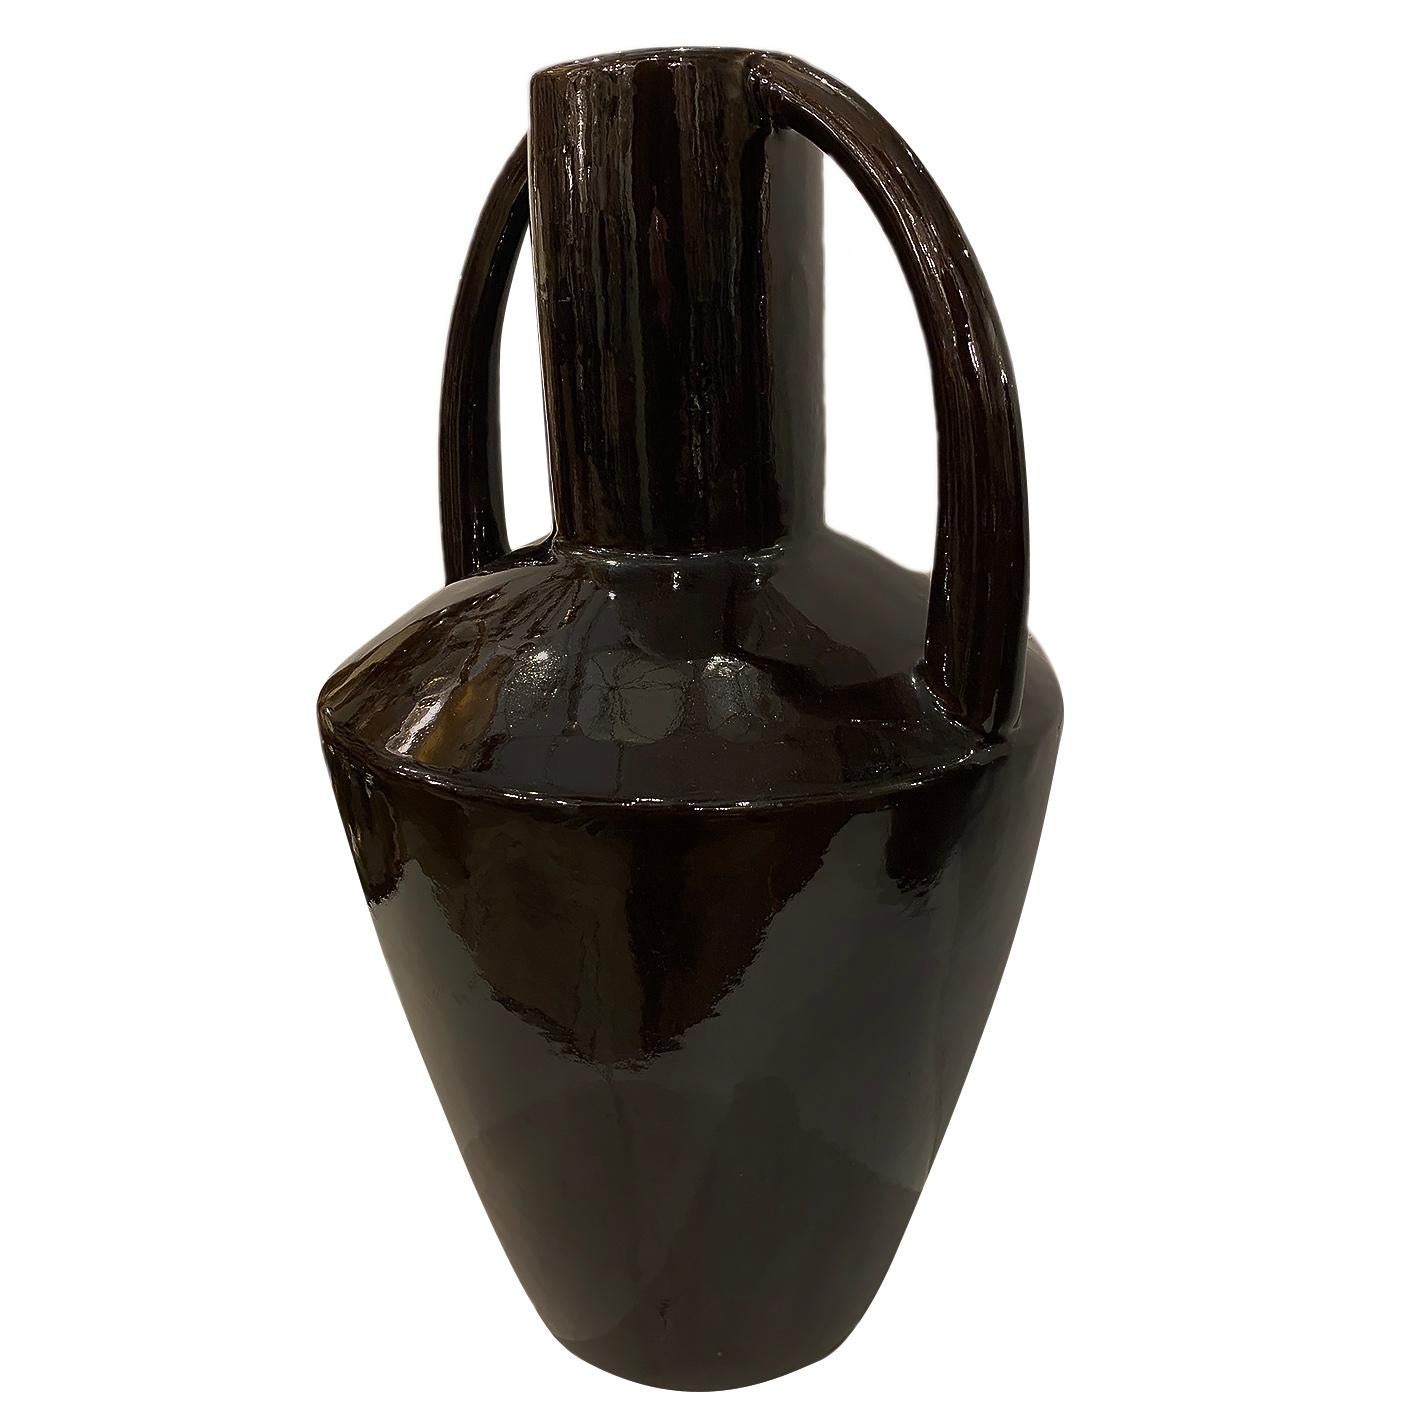 Paire de vases Art Déco italiens des années 1920 dans un ton brun foncé.

Mesures :
Hauteur 18